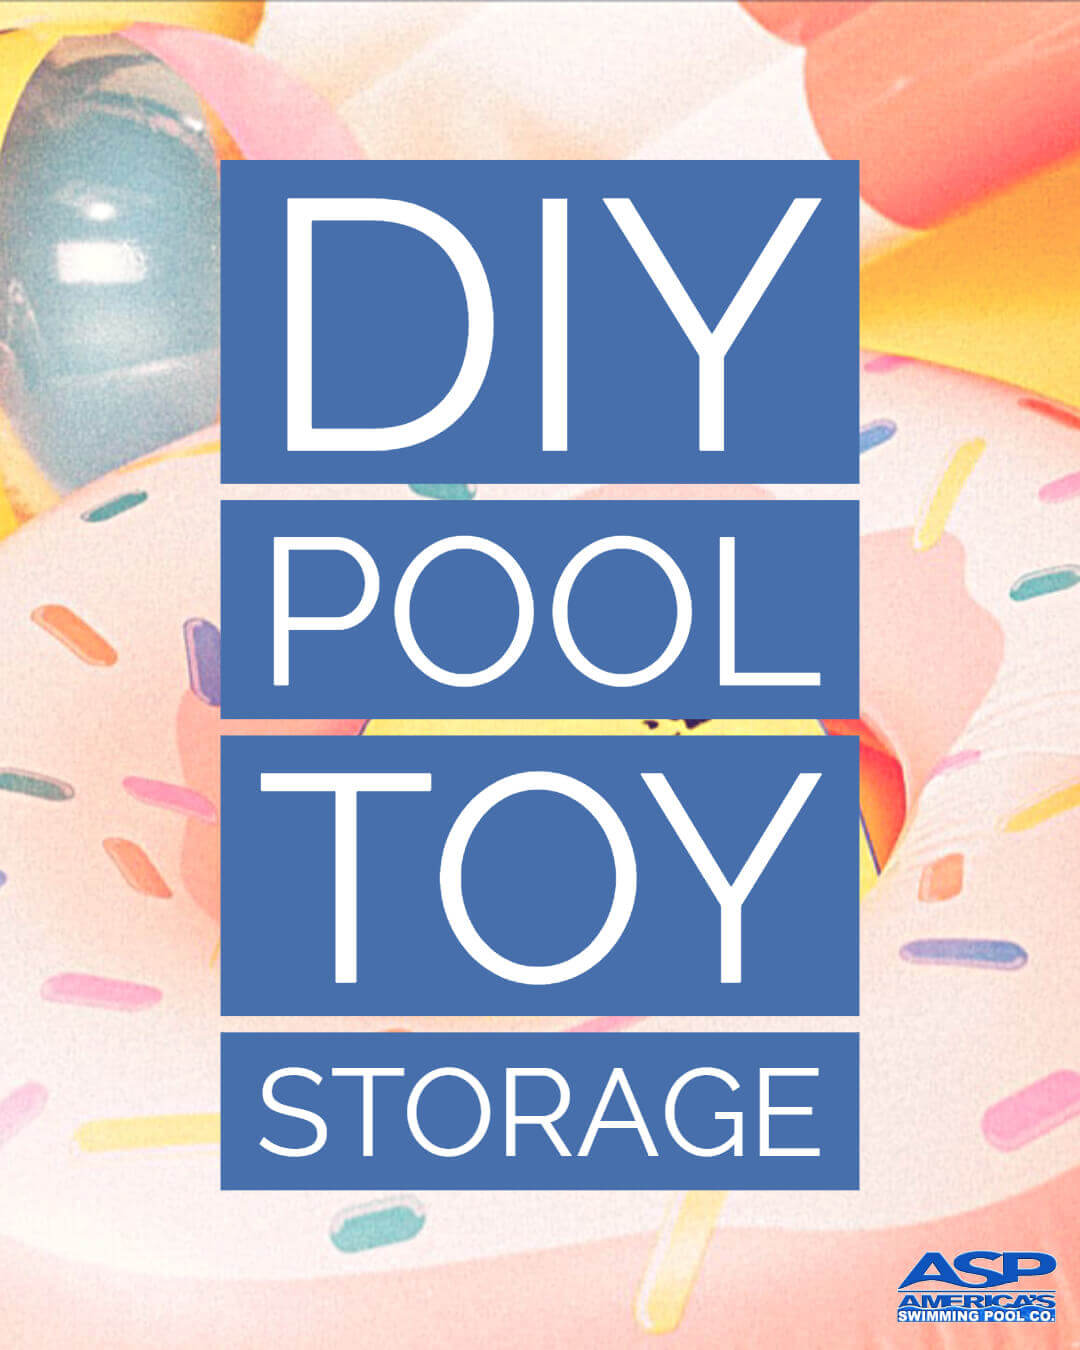 DIY pool toy storage design by ASP